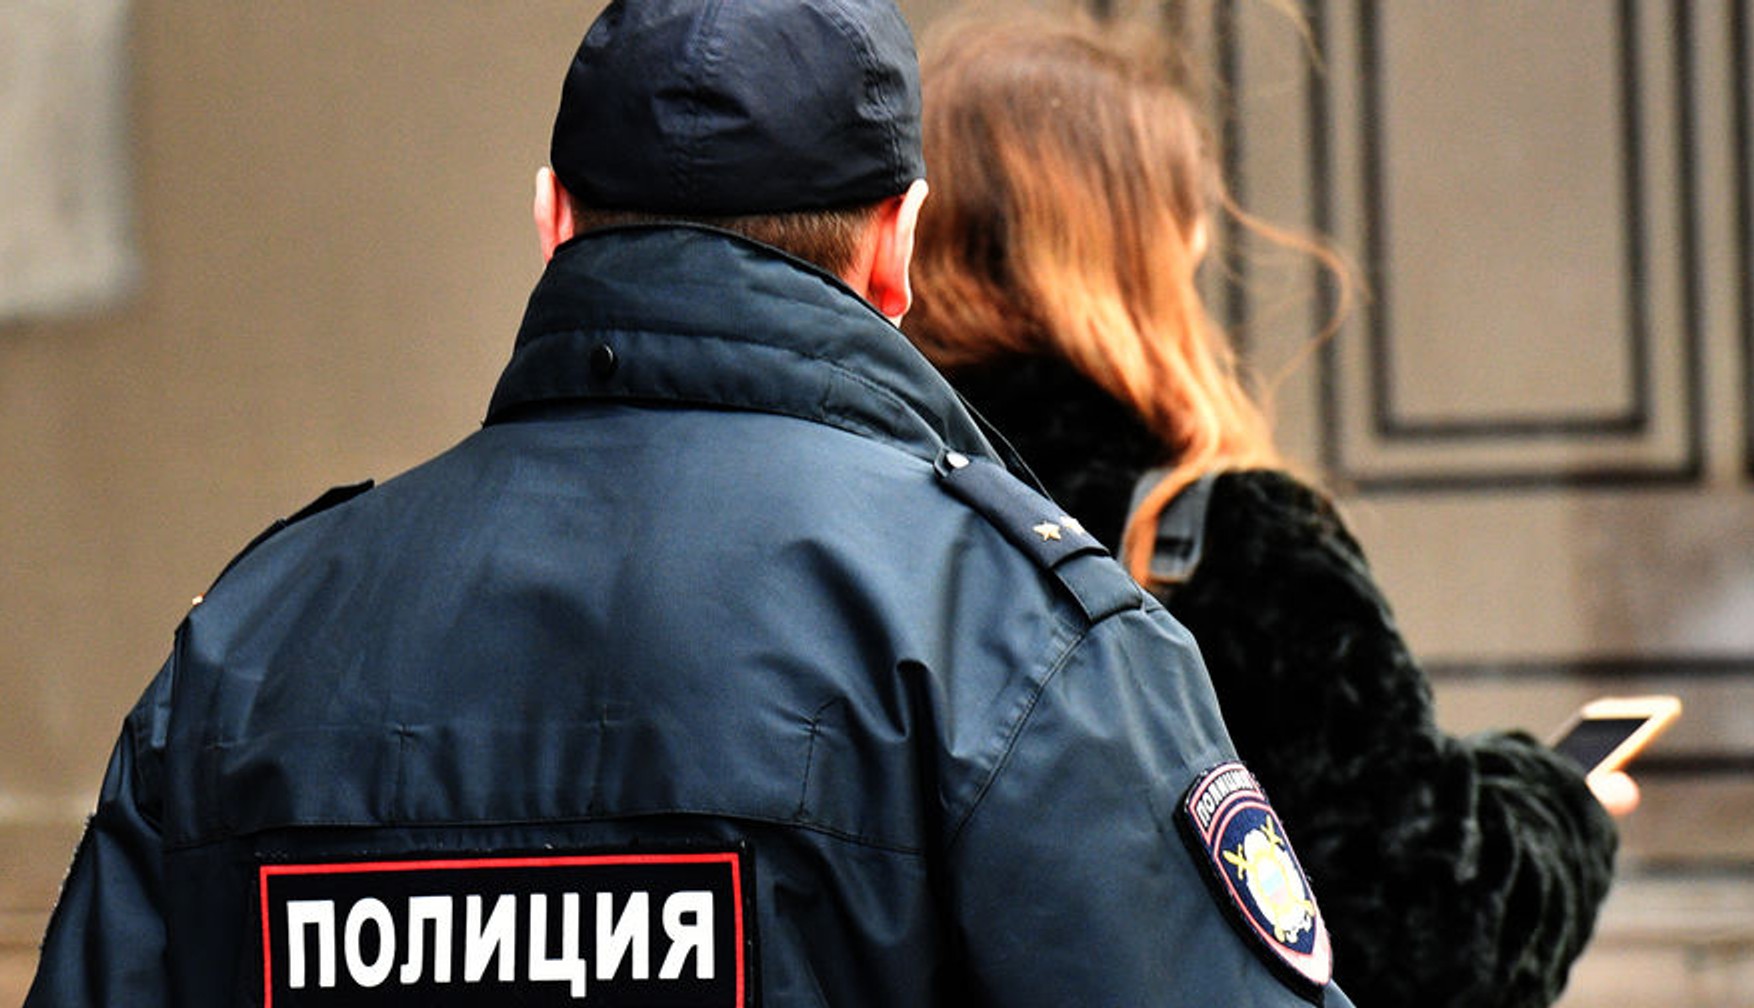 Москвичка заявила про зґвалтування поліцейським в ОВС. Його звільнили заднім числом, а їй відмовили у порушенні кримінальної справи